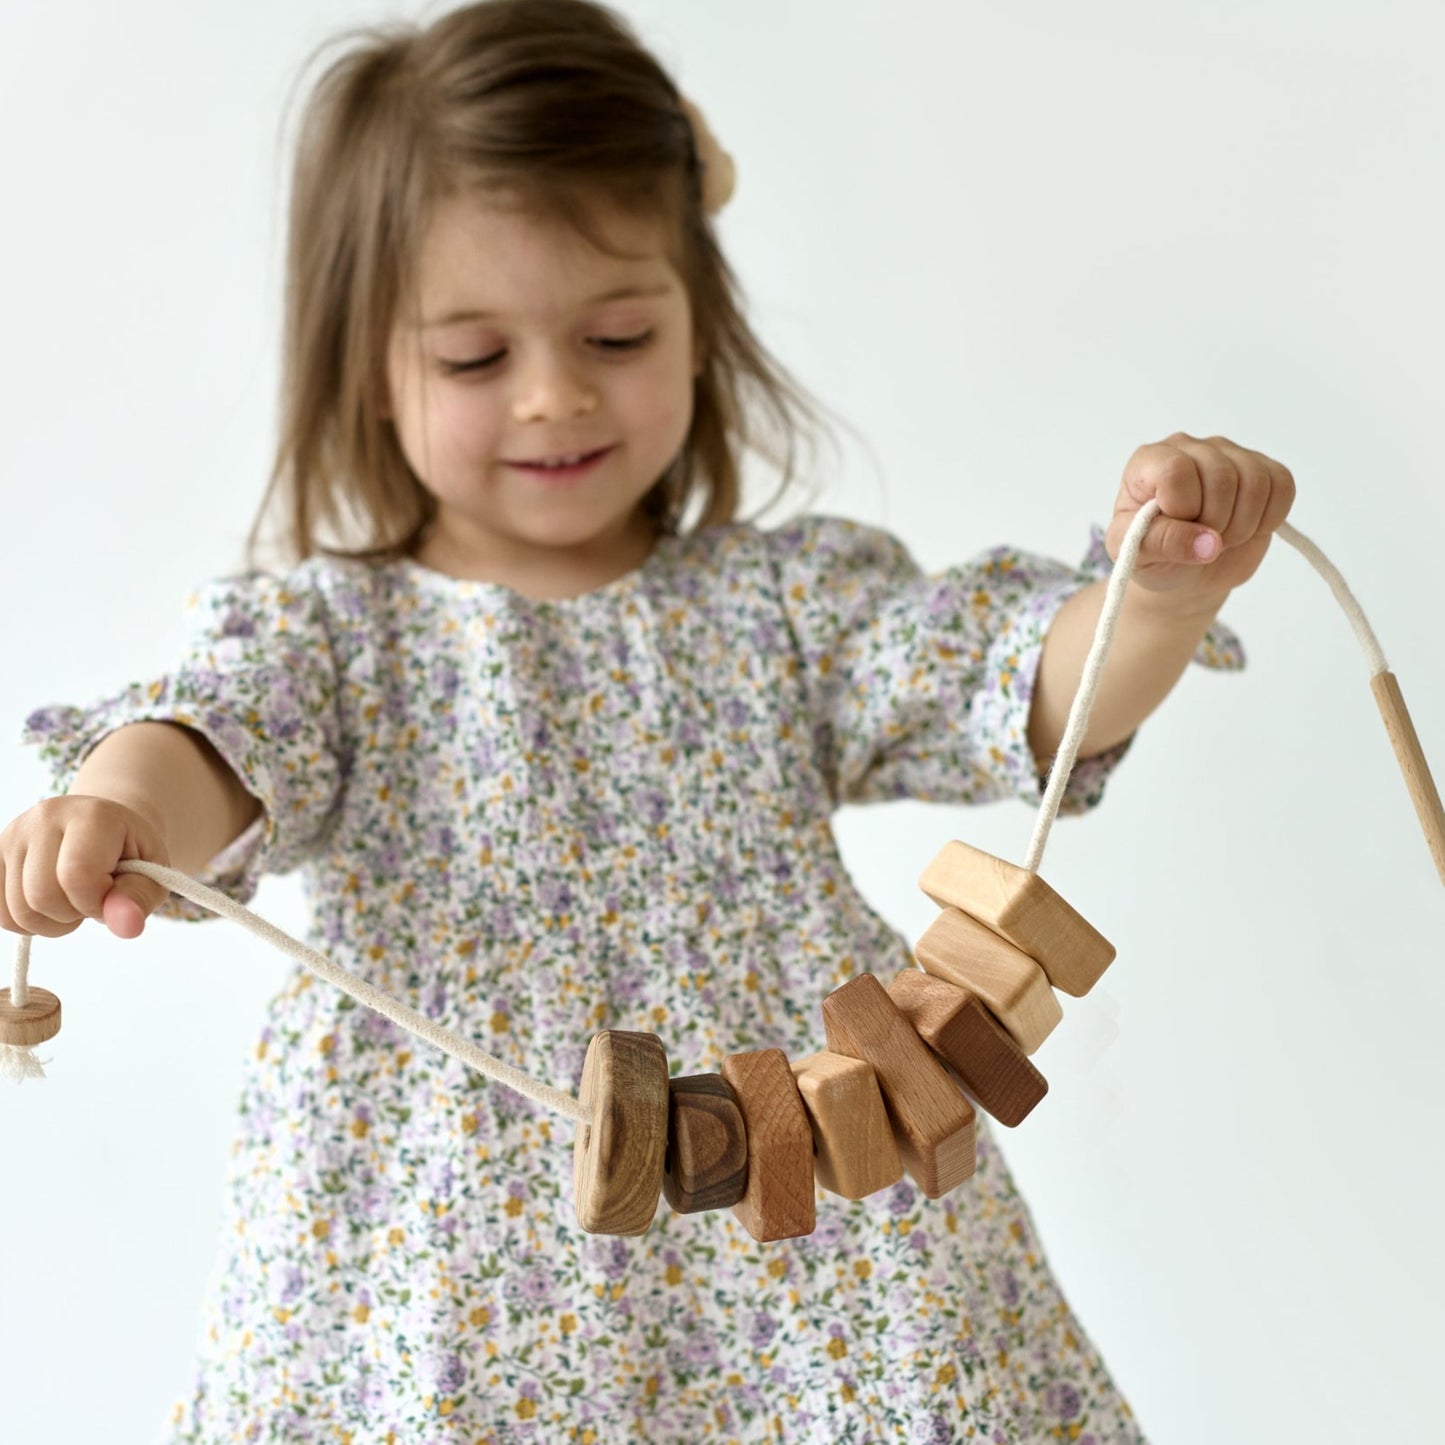 Holzschnürung Spielzeug mit Geometrieformen